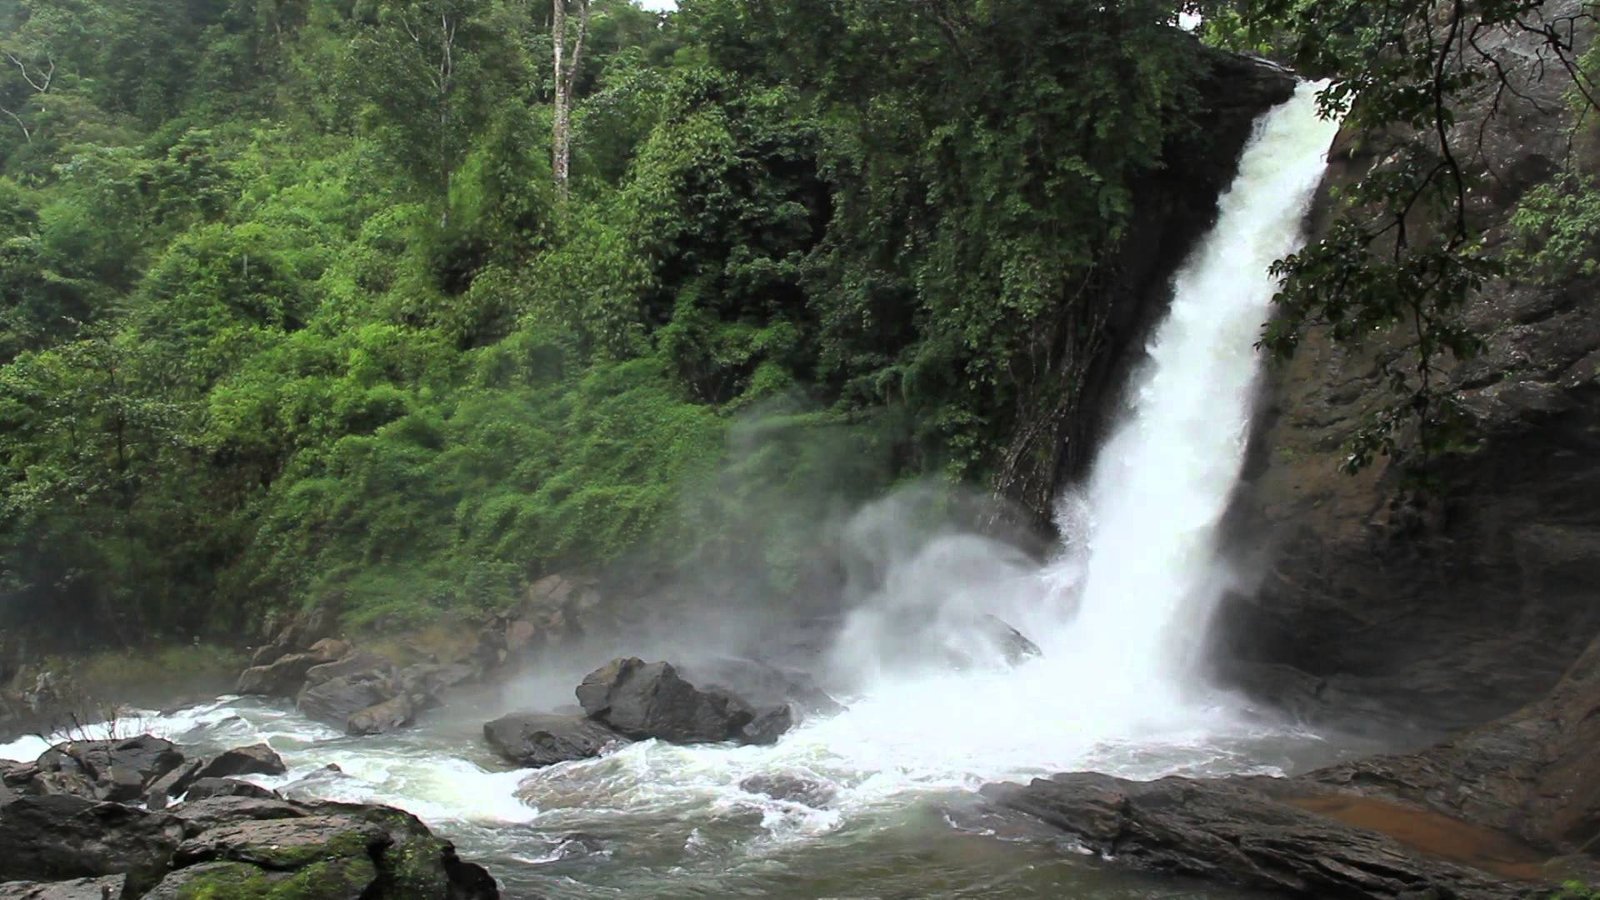 Sentinel Rock Waterfalls / Soochipara Waterfalls 13 km from Meppadi town Wayanad